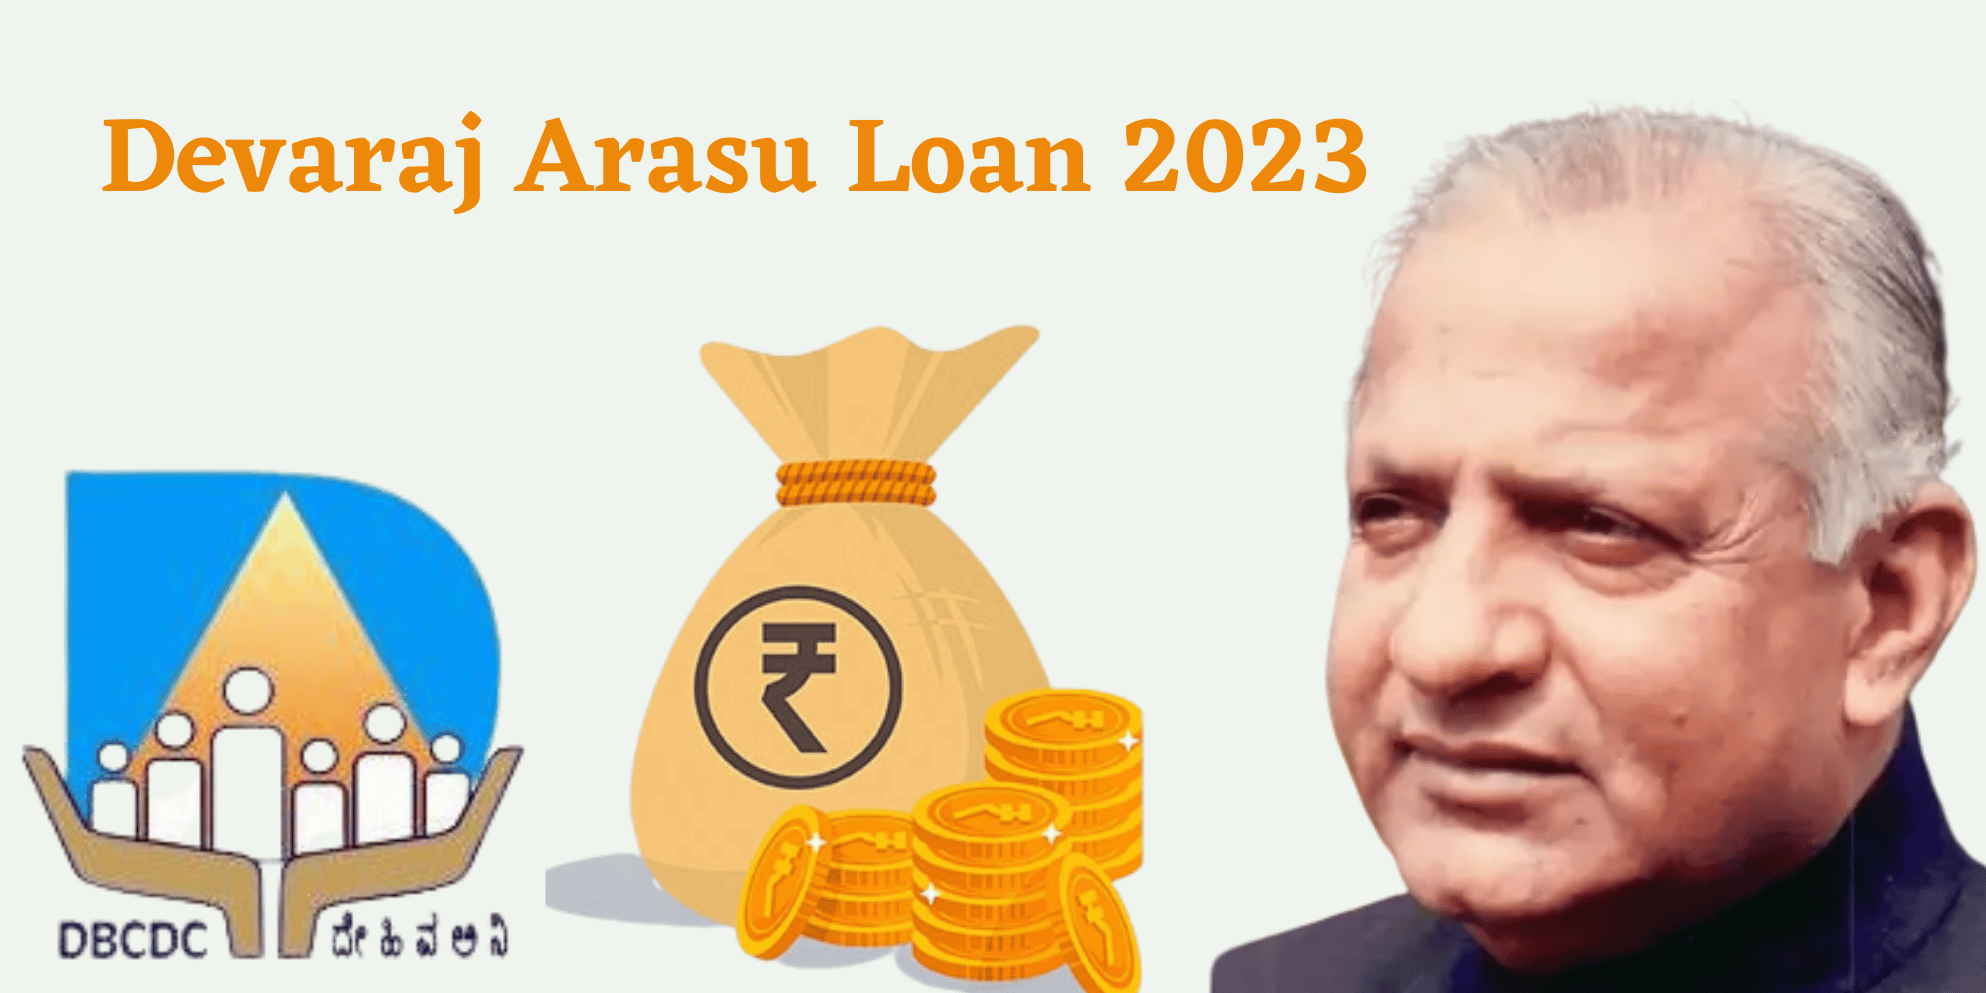 Devaraj Arasu Loan